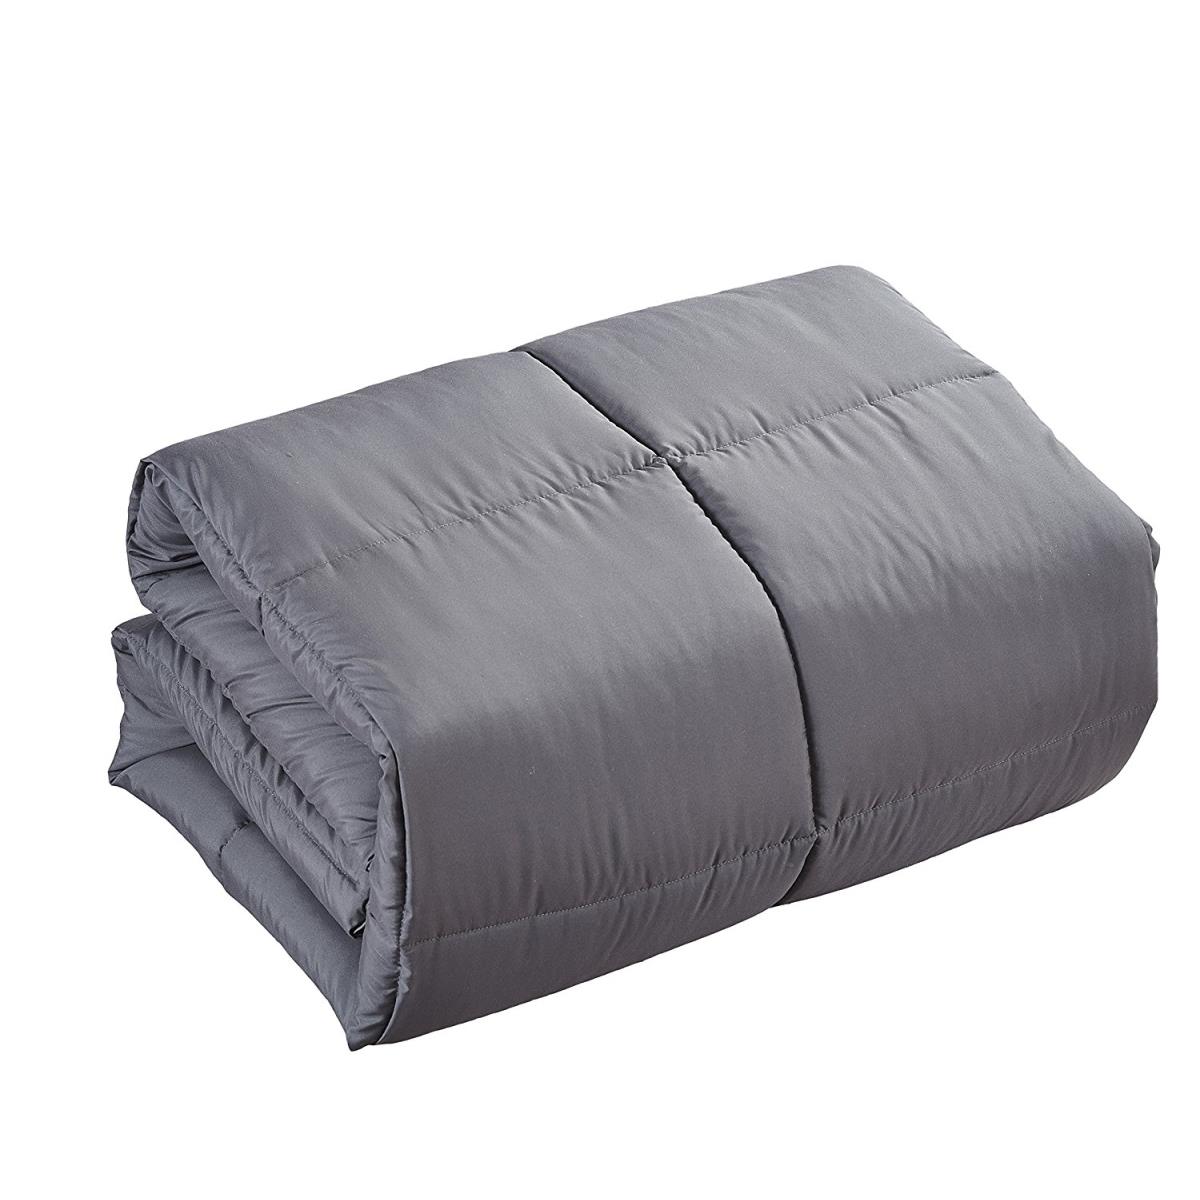 Comfort-dg-k 104 X 88 In. California & Eastern King Size Comforter Duvet Insert - Gray